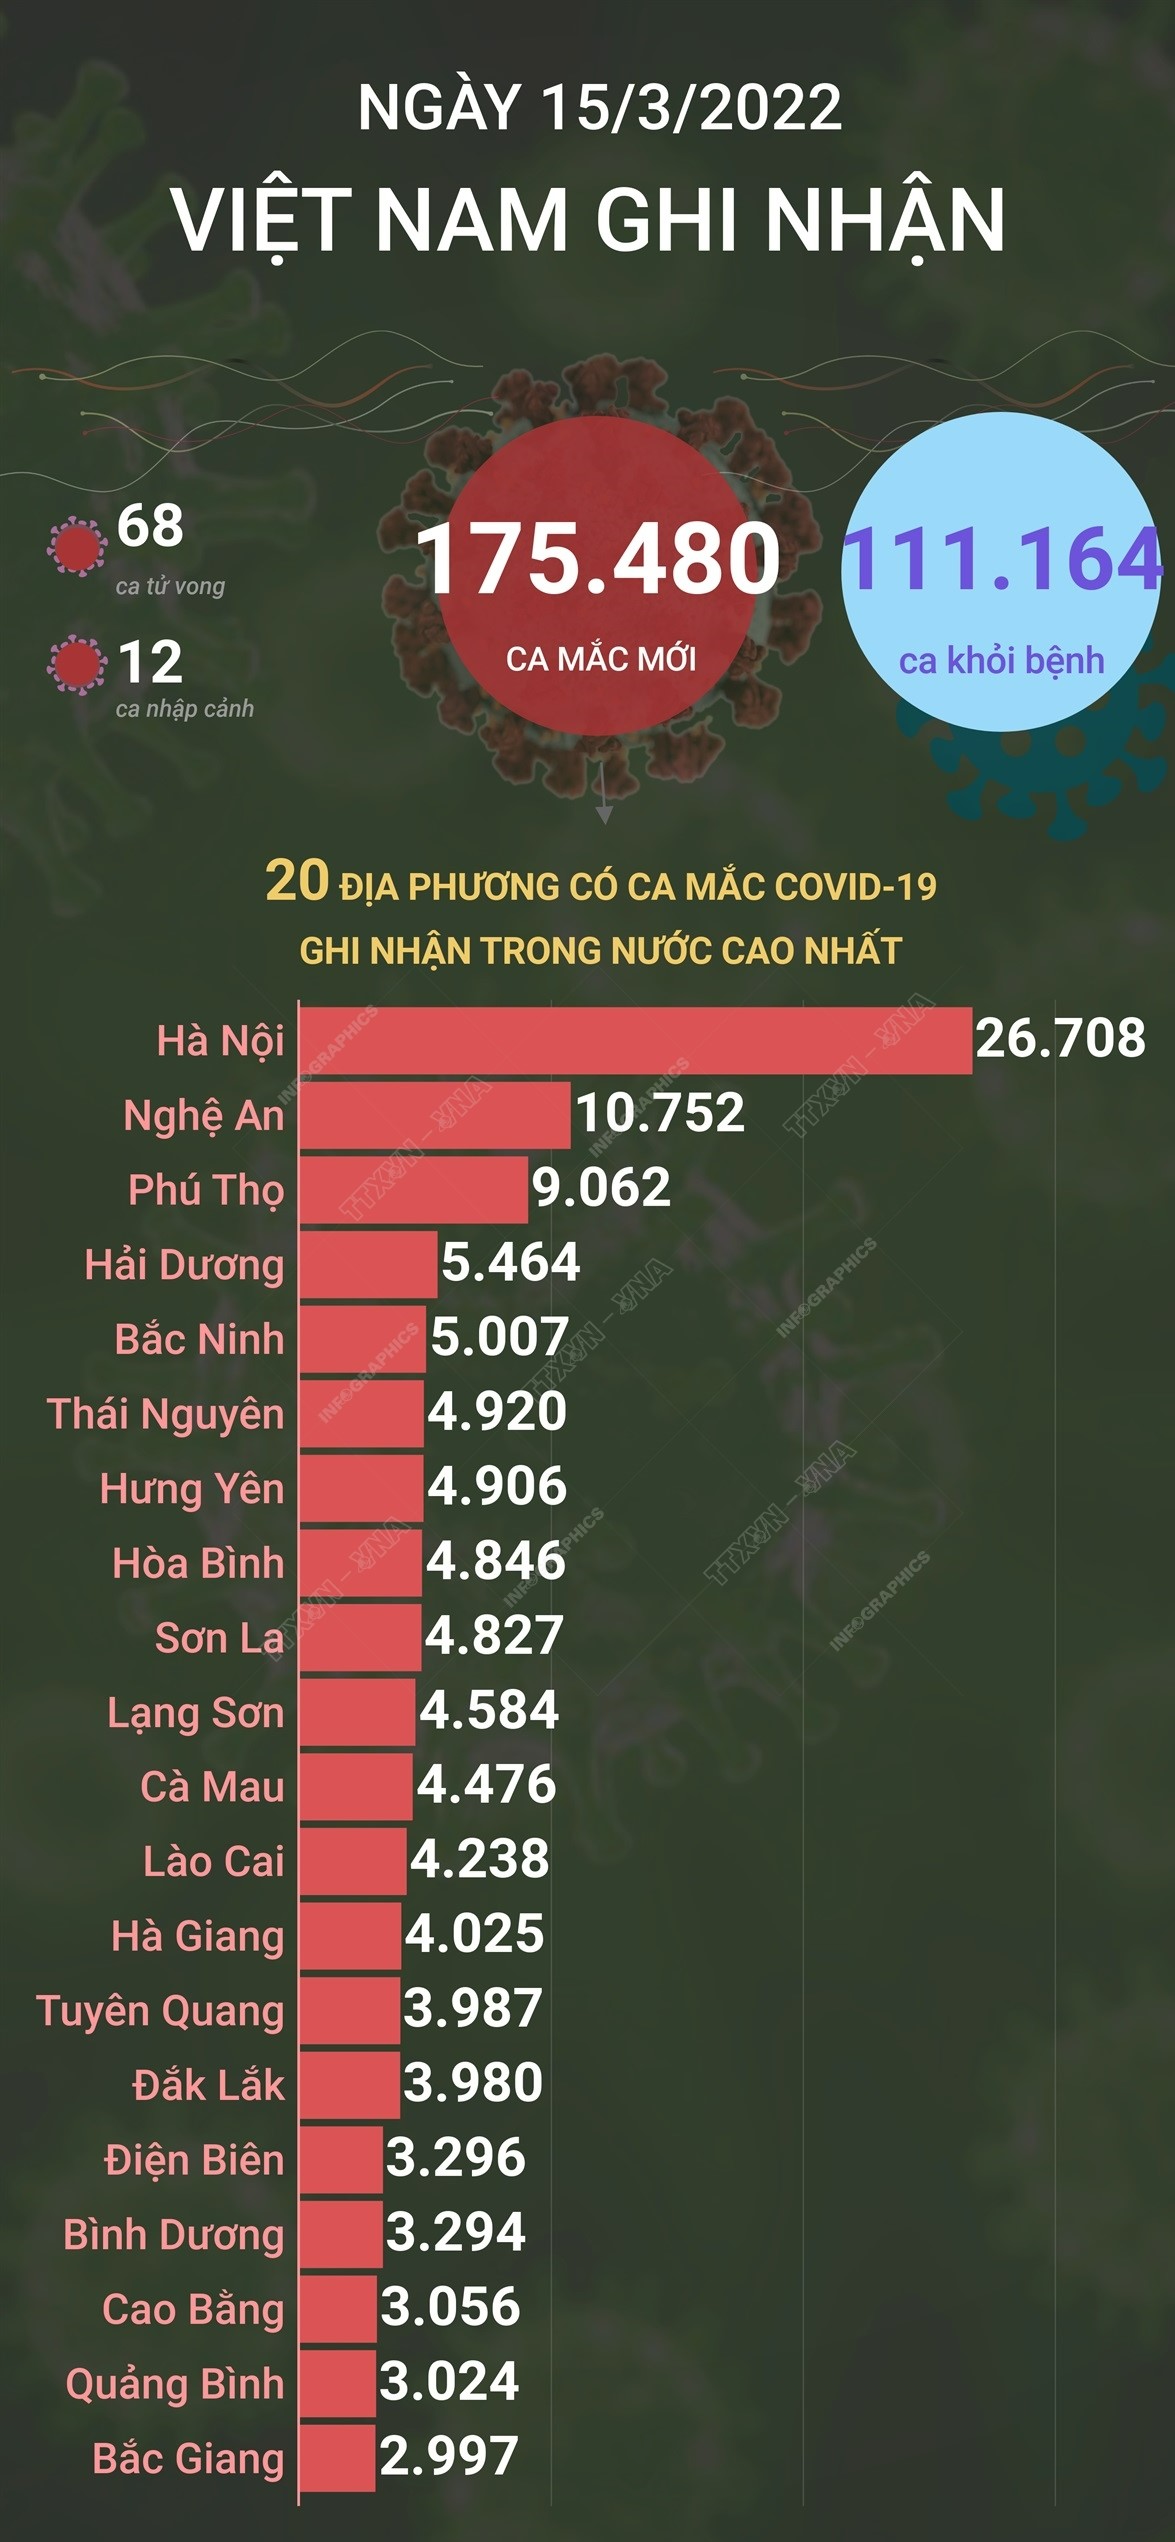 Ngày 15/3/2022, Việt Nam ghi nhận 175.480 ca mắc mới và 68 ca tử vong do COVID-19